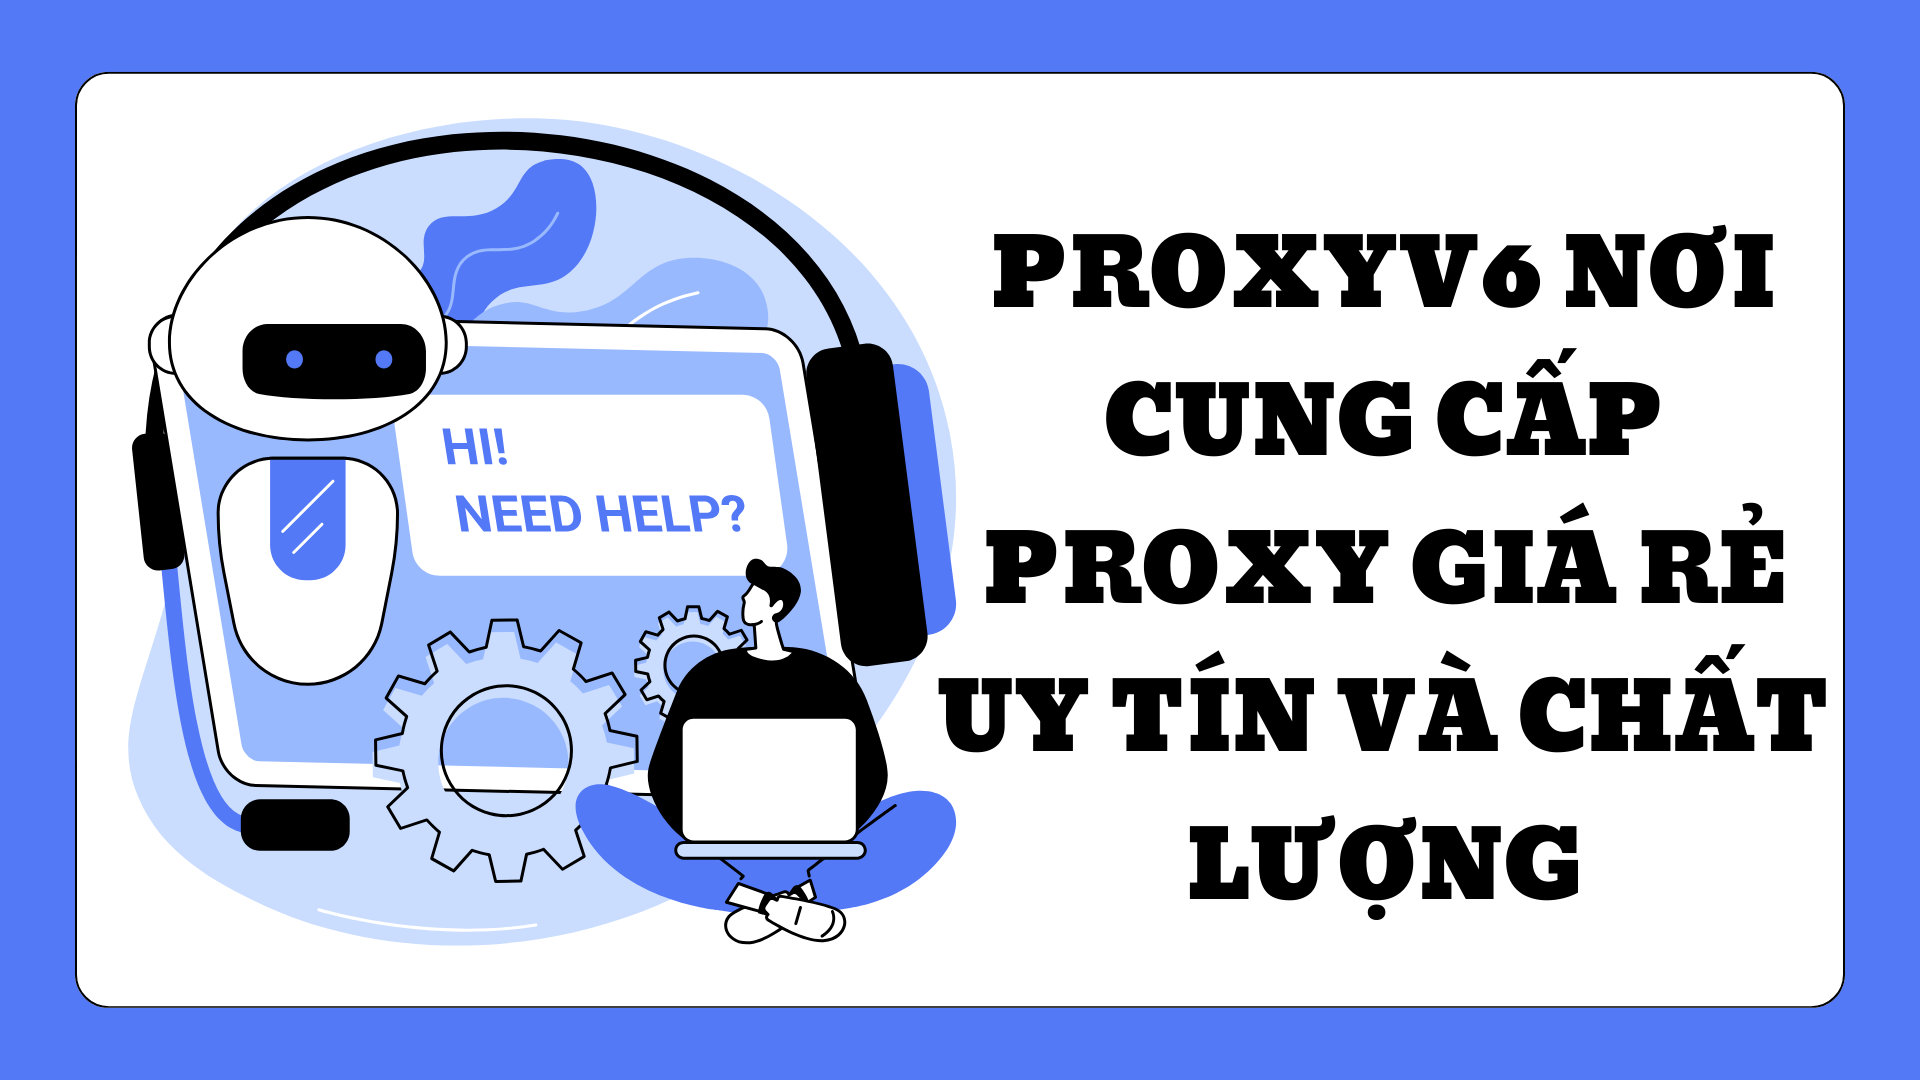 Proxyv6 nơi cung cấp Proxy giá rẻ uy tín và chất lượng